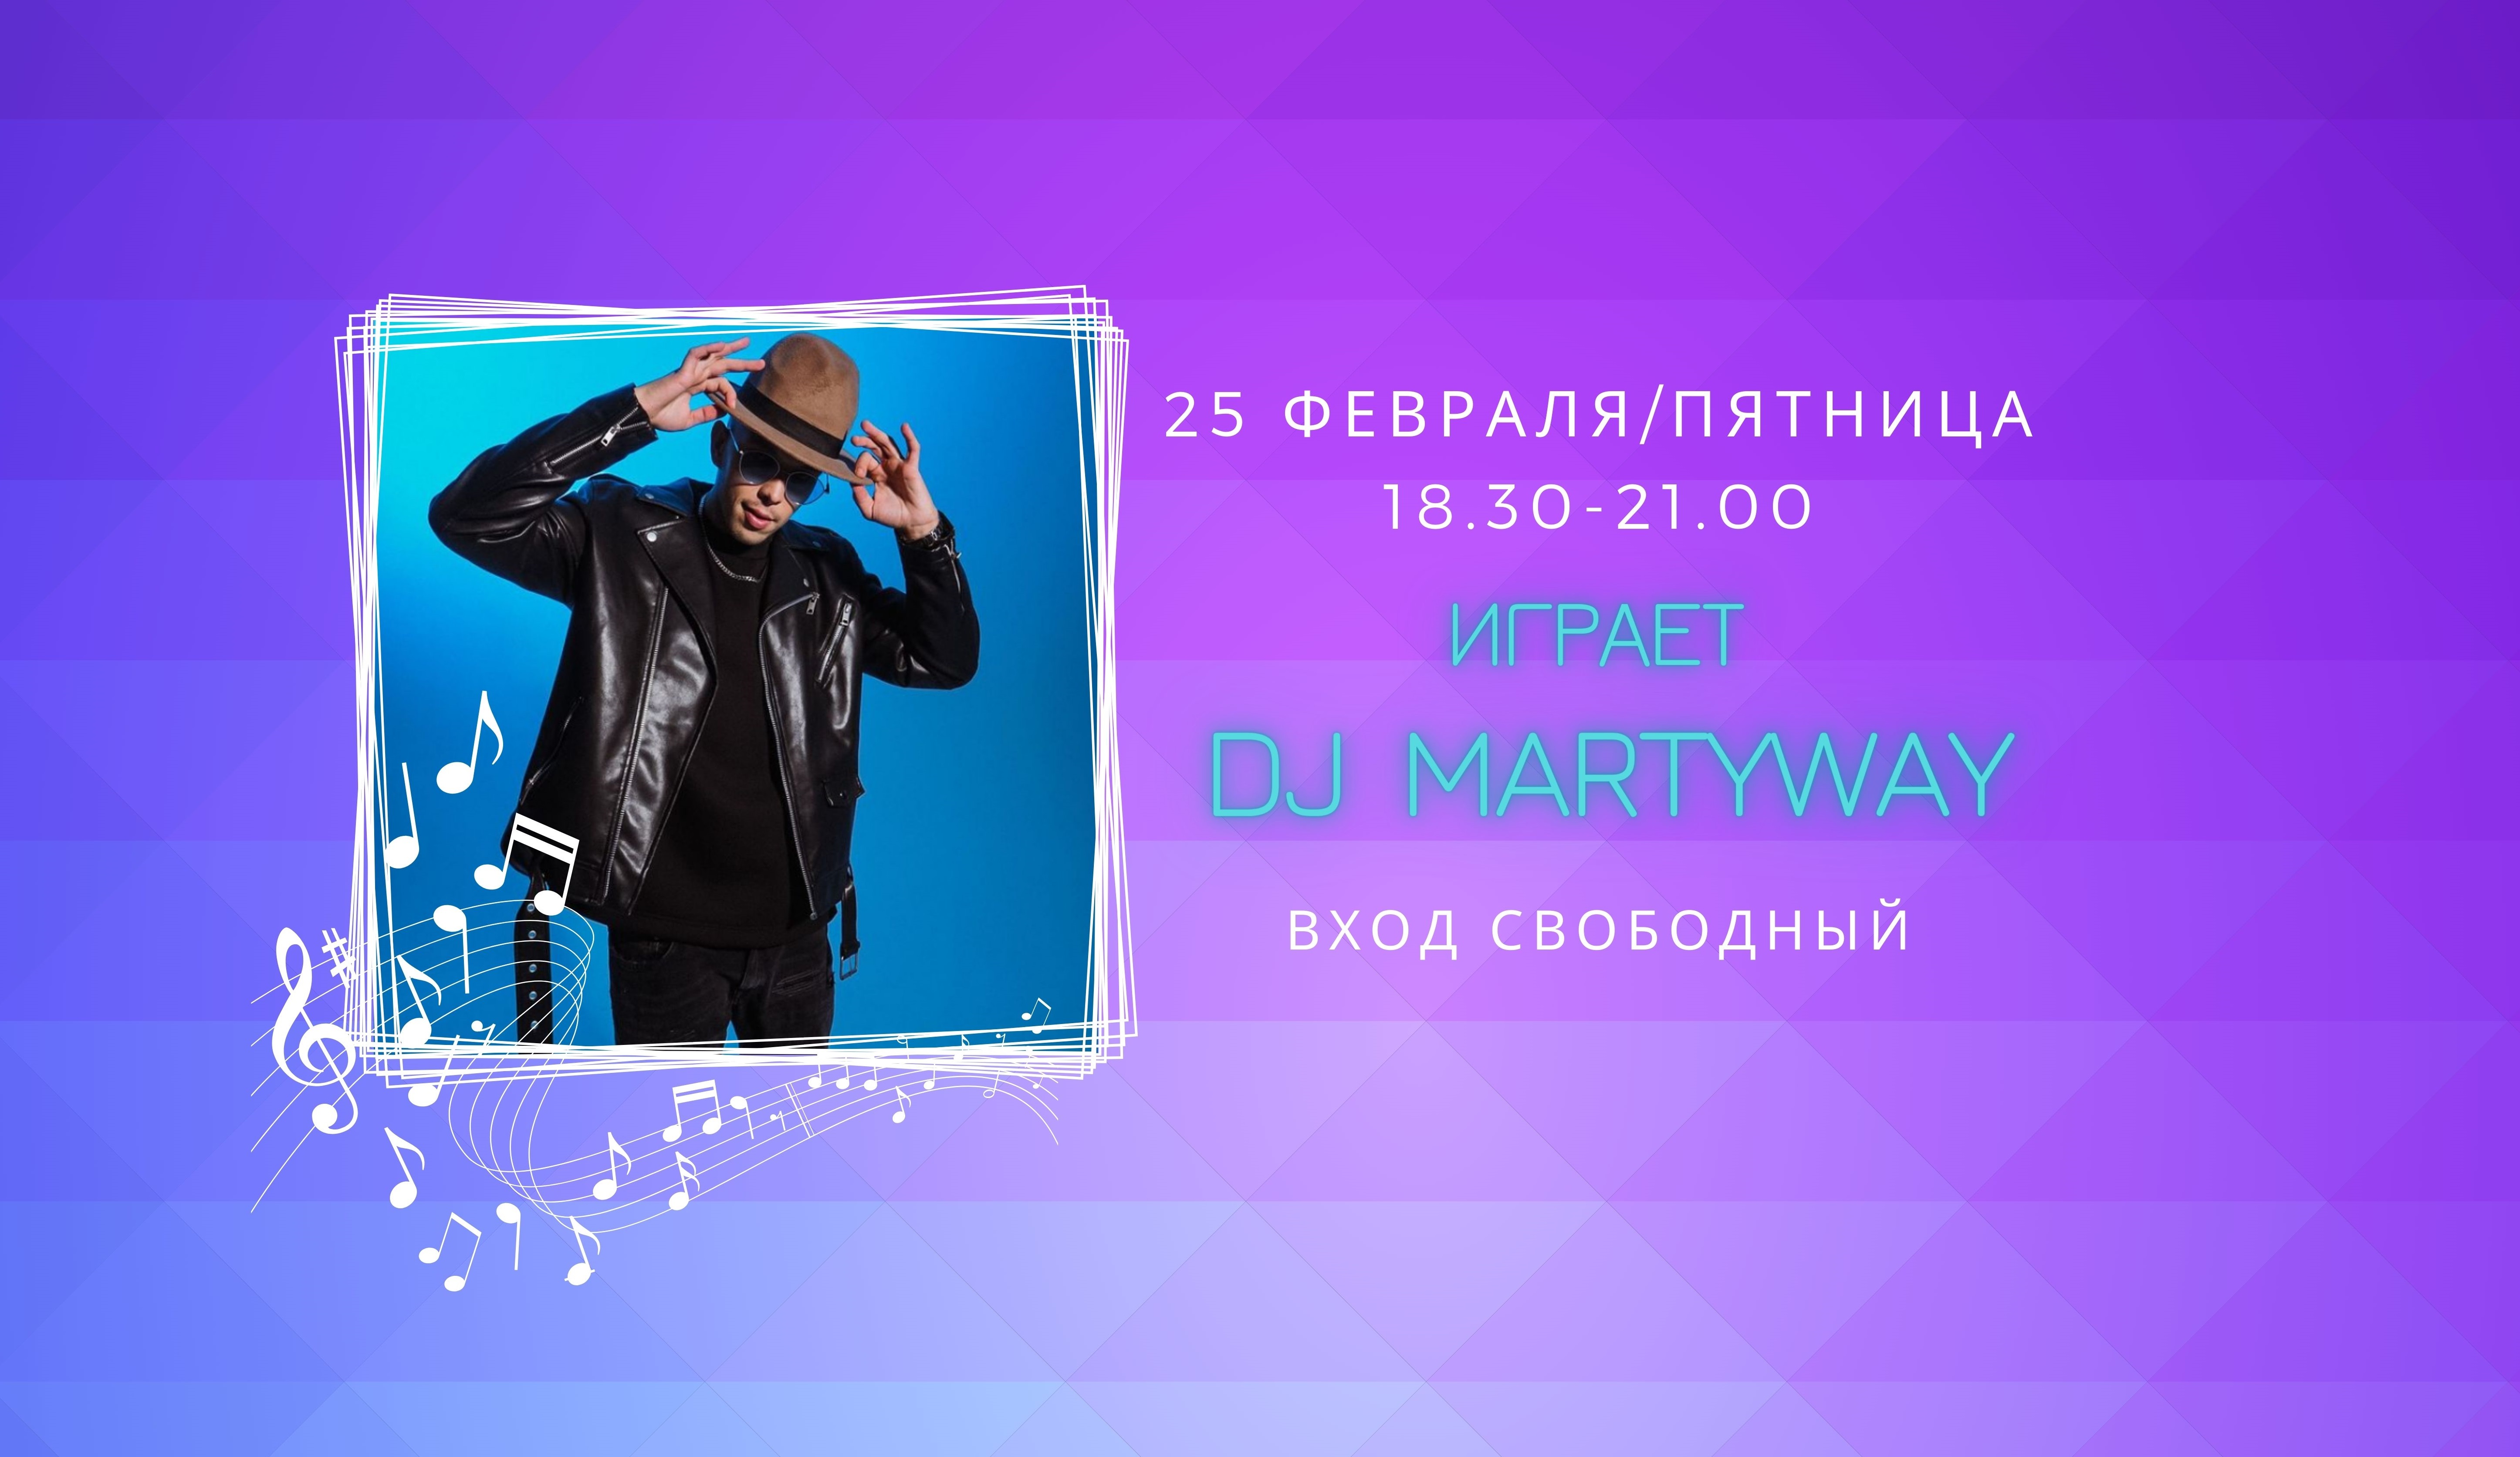 На сцене DJ MARTYWAY